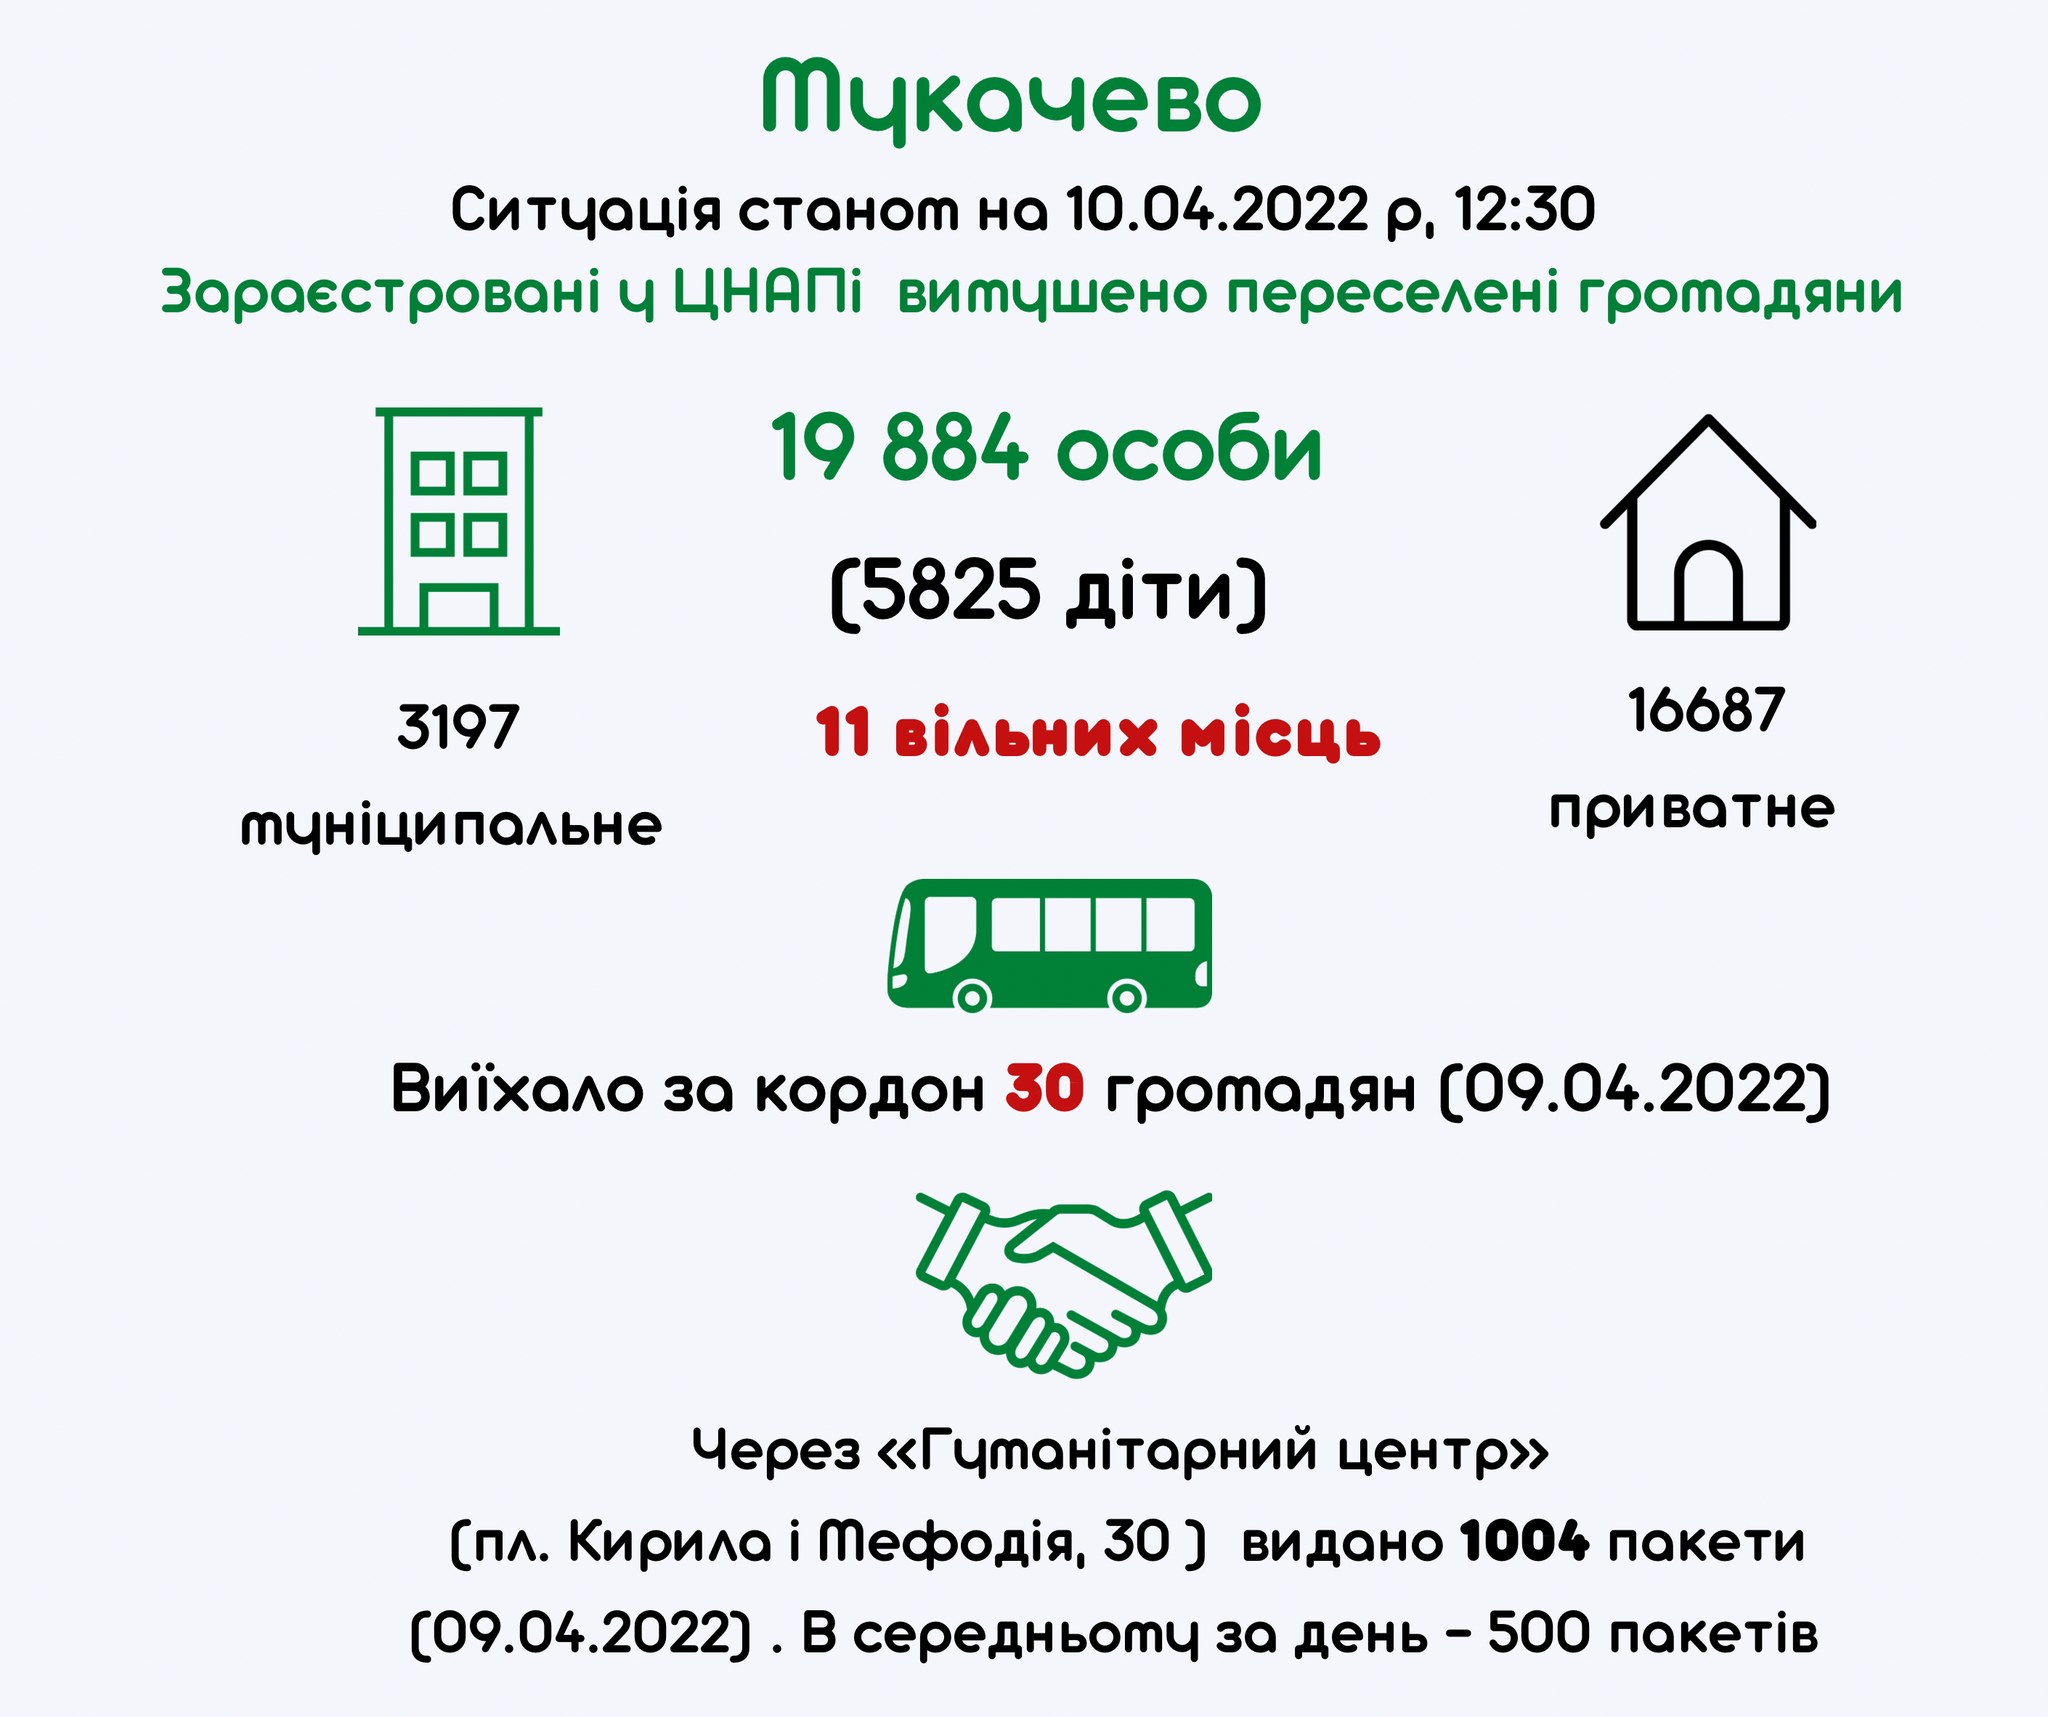 У Мукачеві зареєстрували 19 884 вимушених переселенців, з них 5825 – дітей